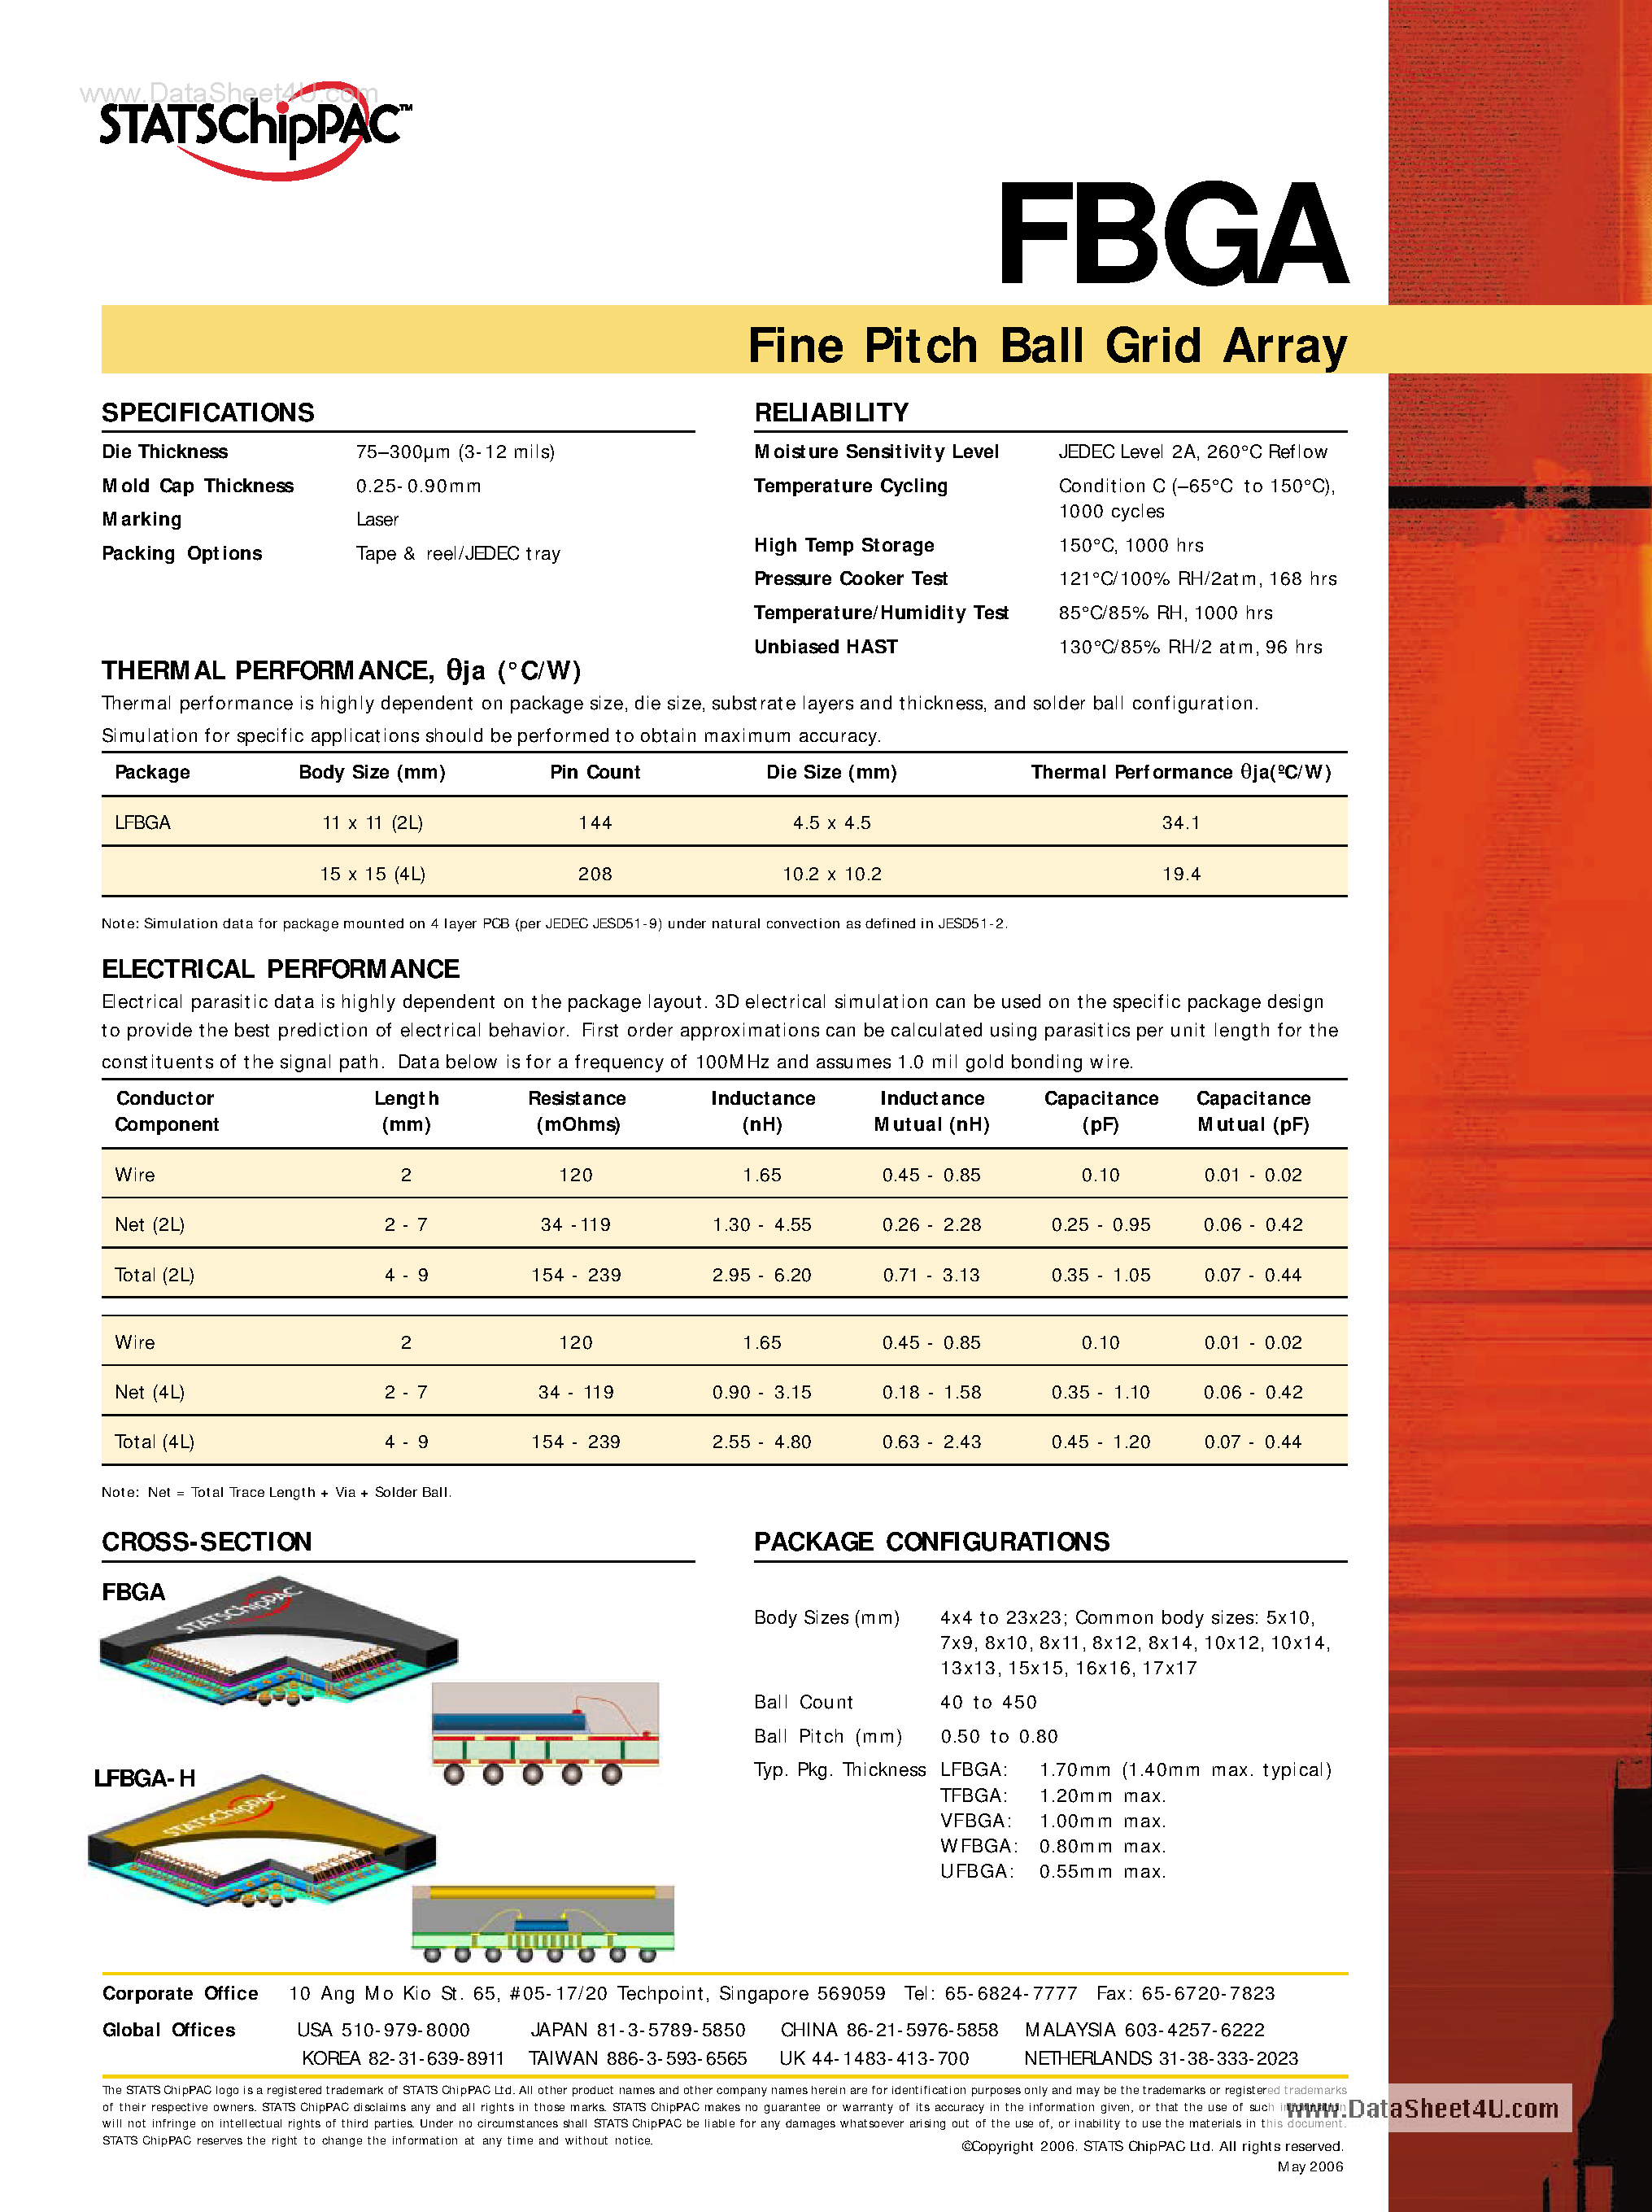 Даташит FBGA - Fine Pitch Ball Grid Array страница 2